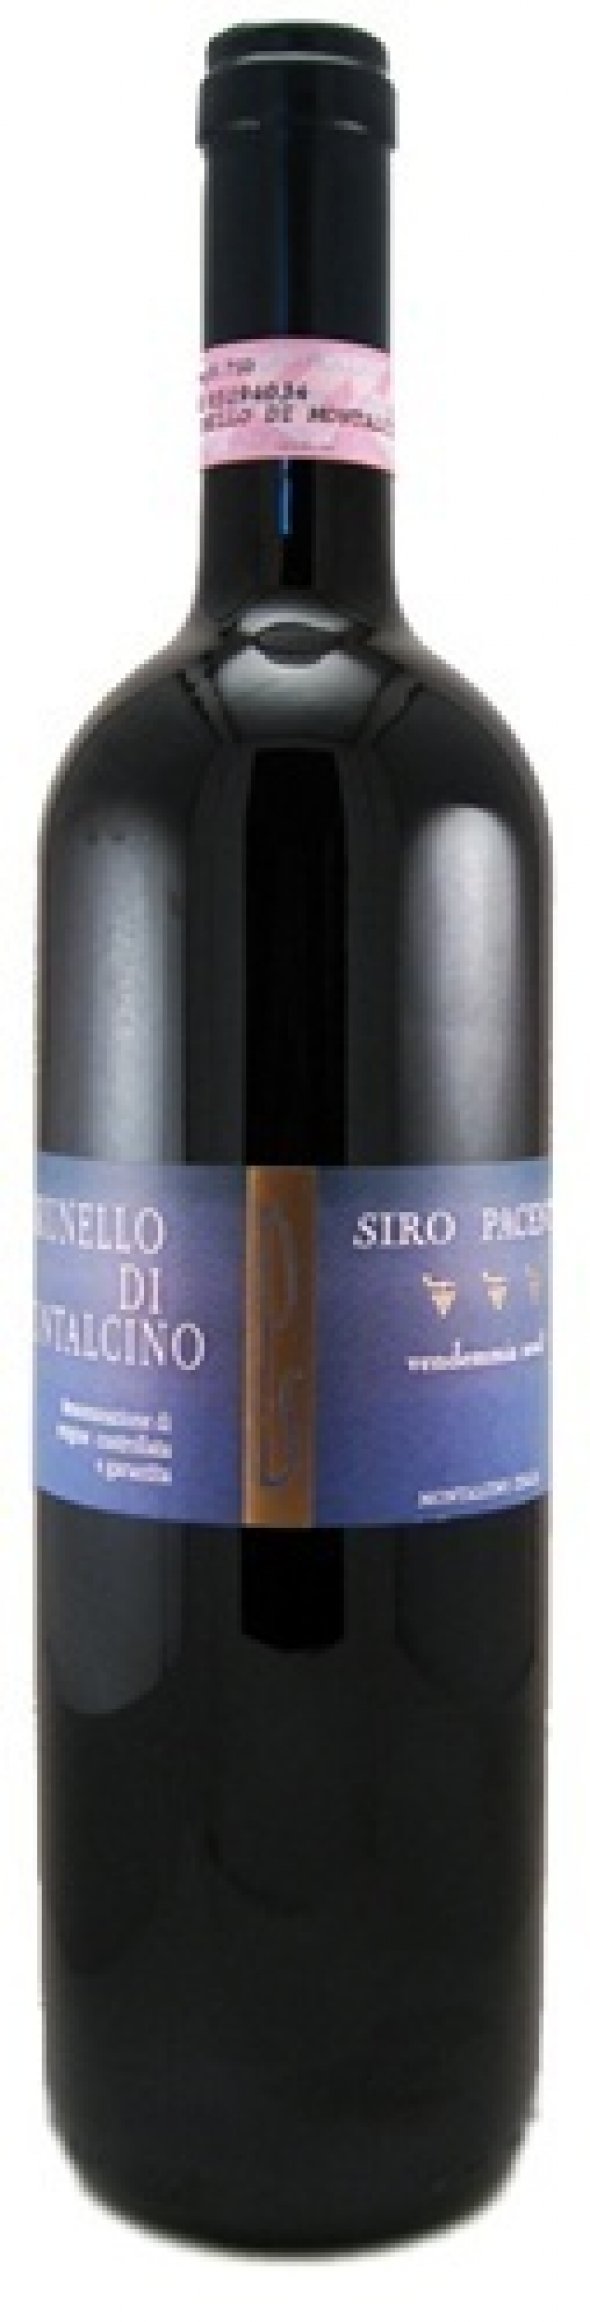 Brunello di Montalcino 2012 Siro Pacenti 'Old Wines' Tuscany